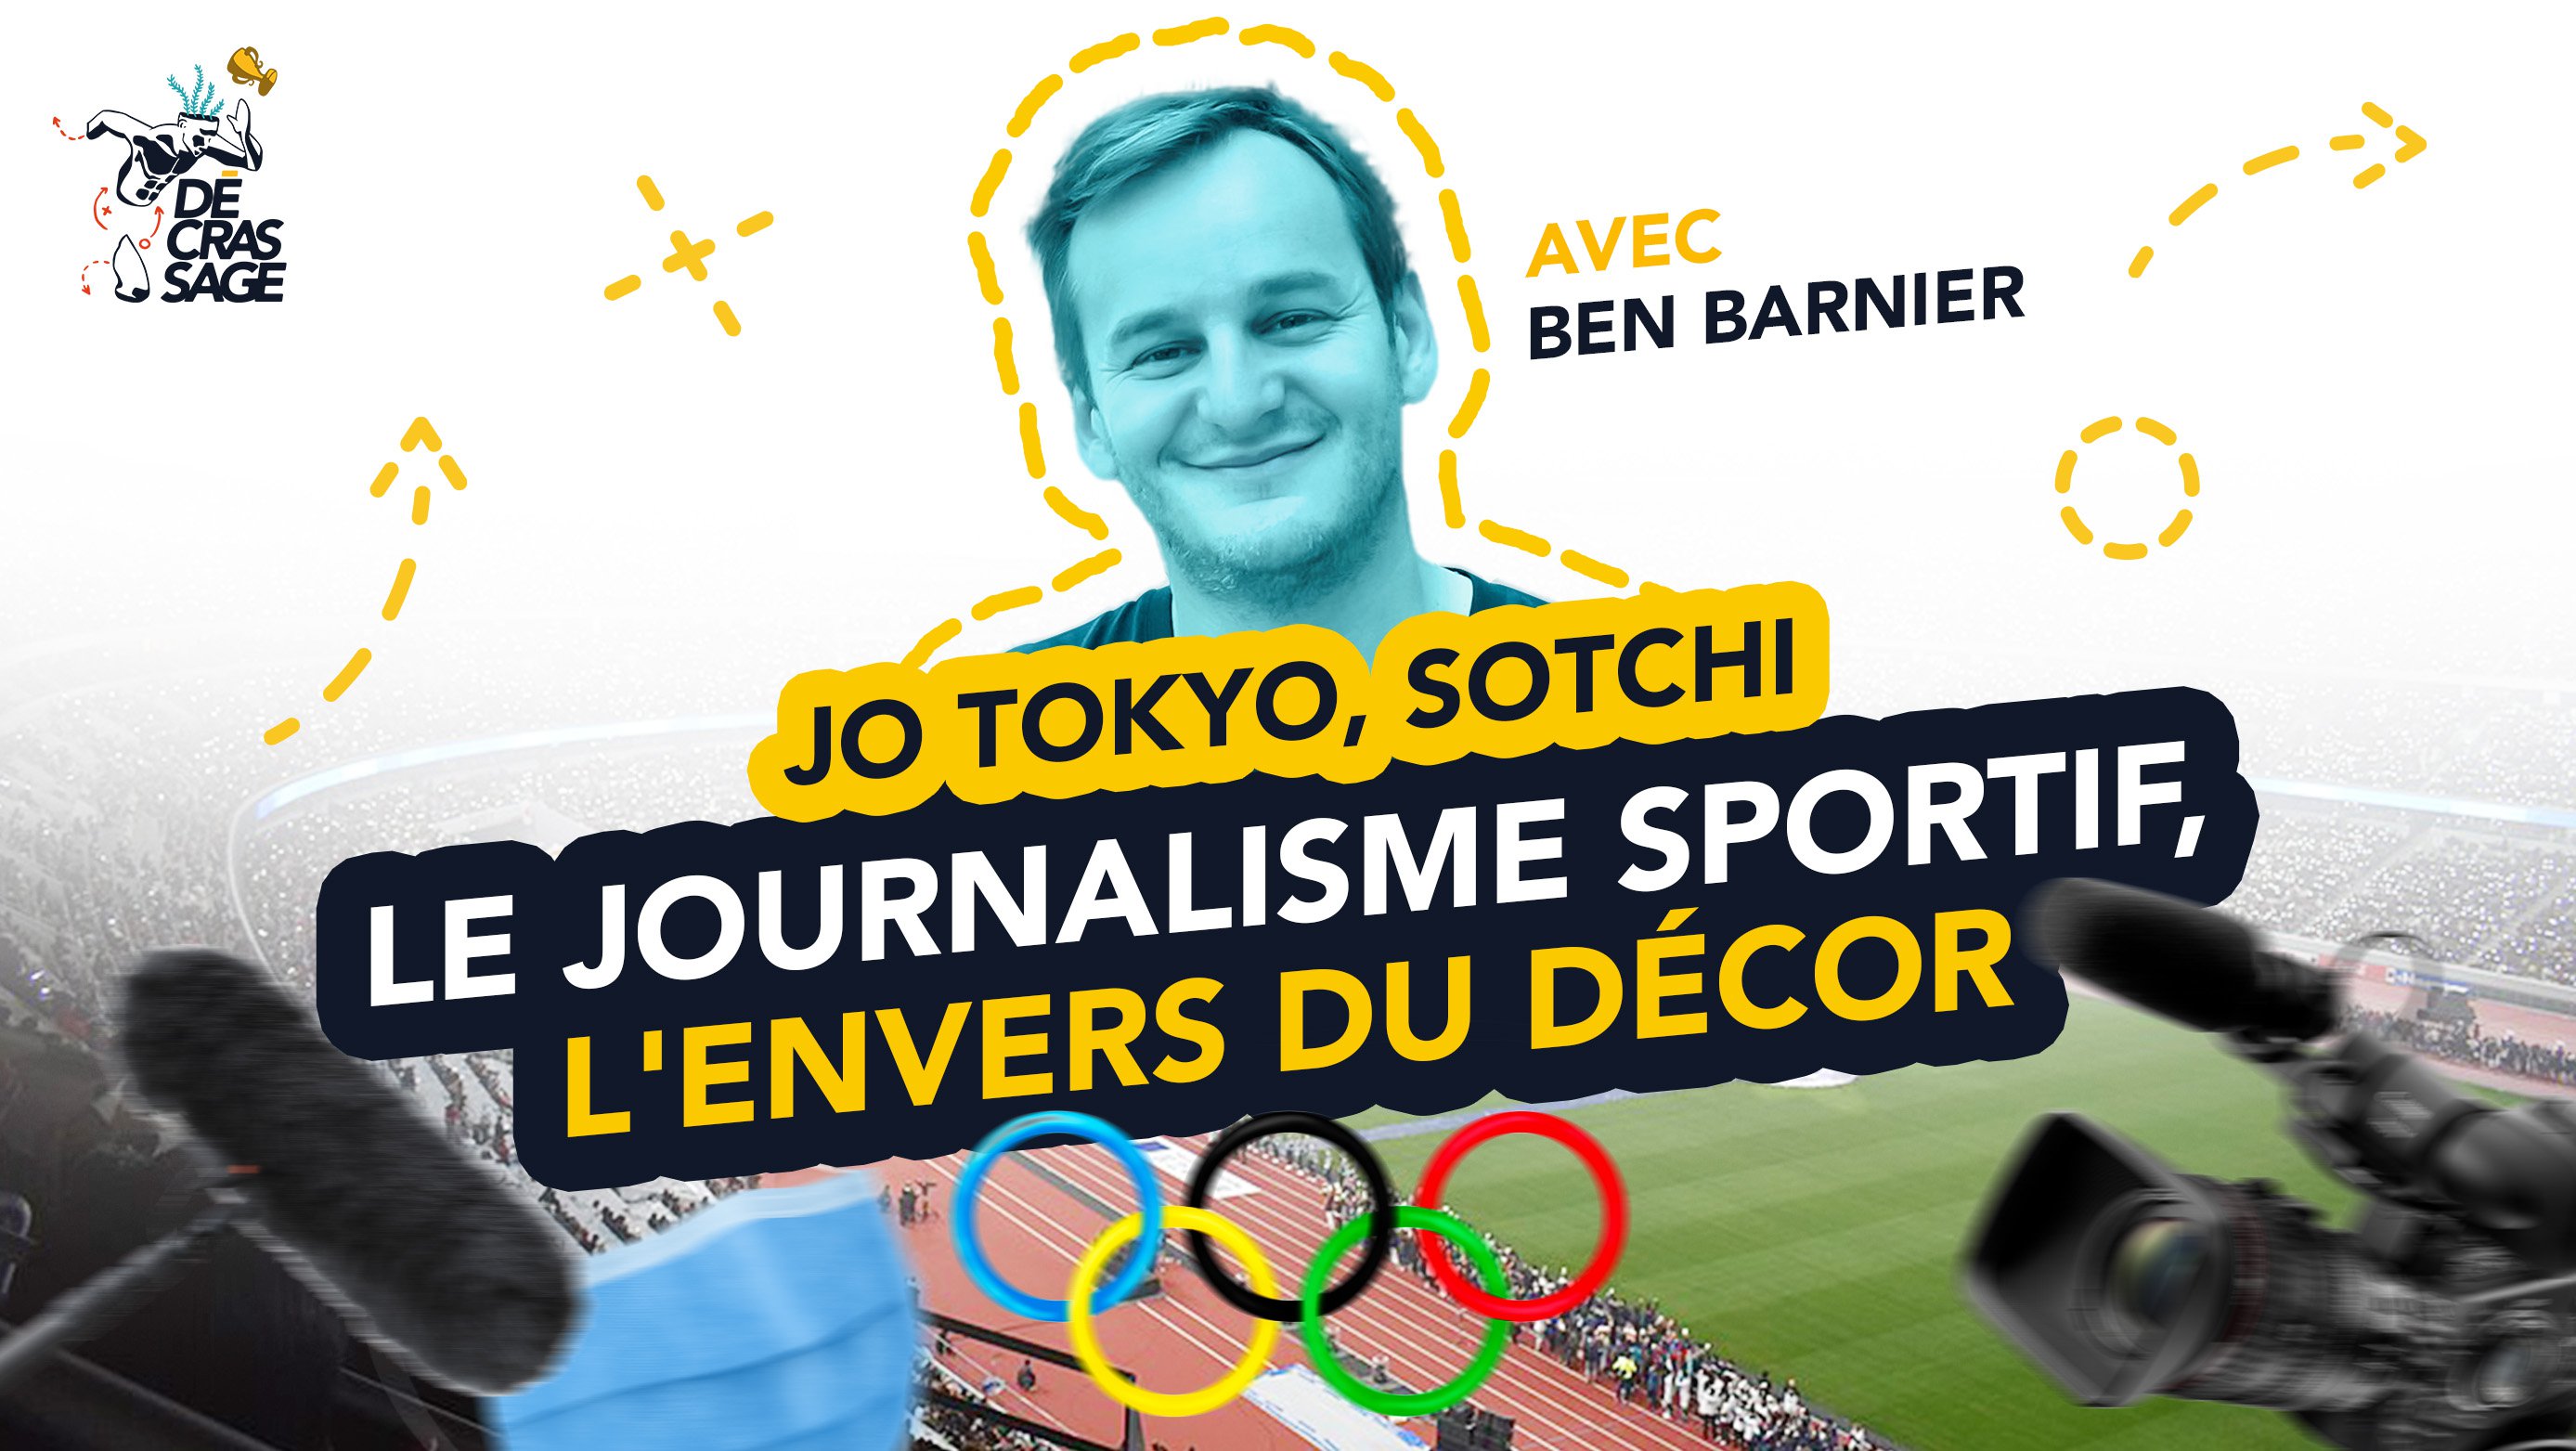 Juegos Olímpicos de Tokio, Sochi: periodismo deportivo y detrás de escena